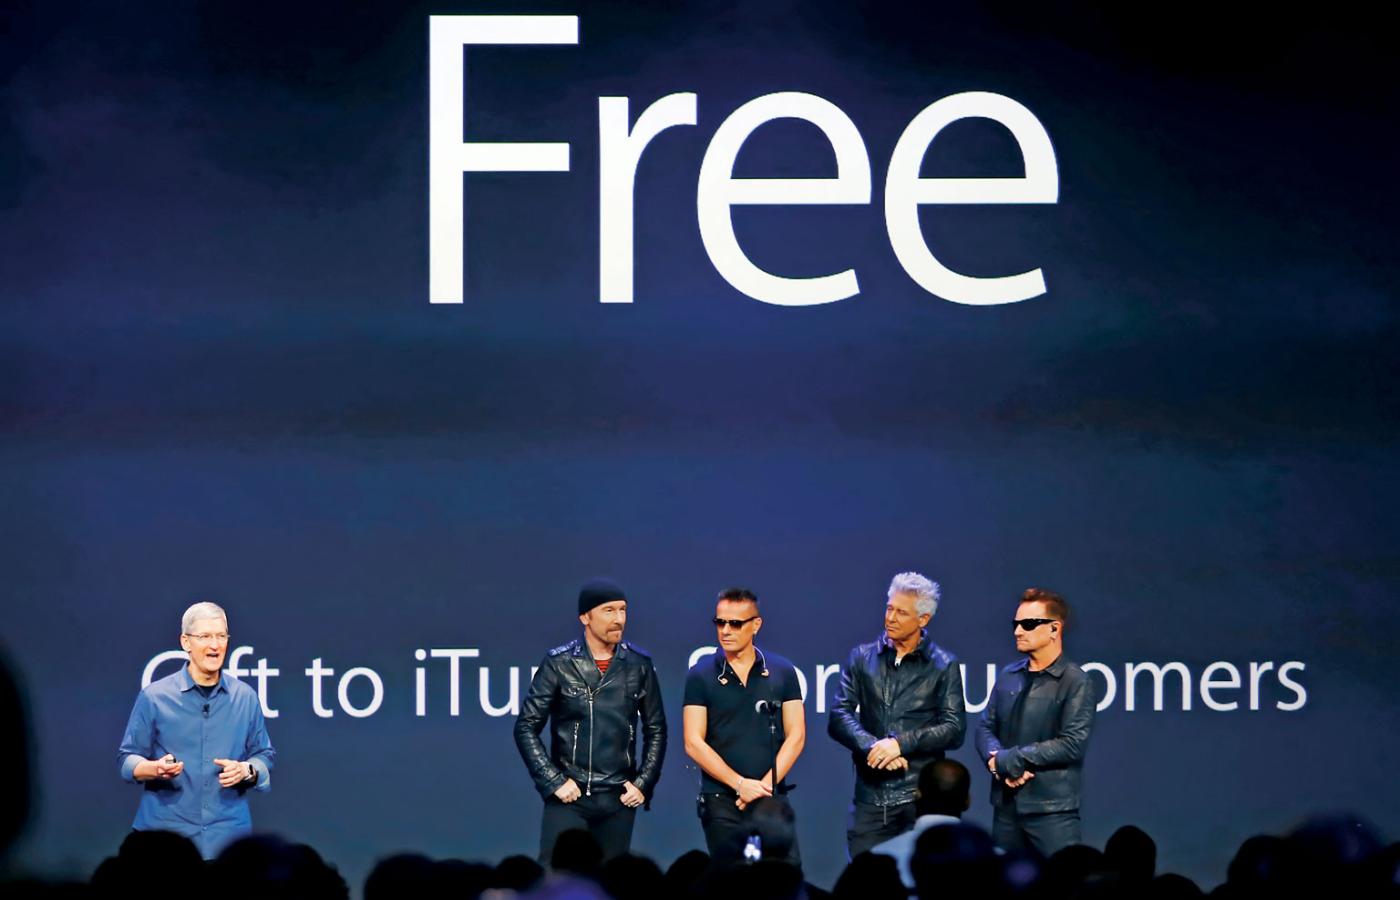 Skoro U2 dziś wydali płytę za darmo, to przy okazji następnej być może ludzie będą oczekiwać dopłaty, by w ogóle ich słuchać?